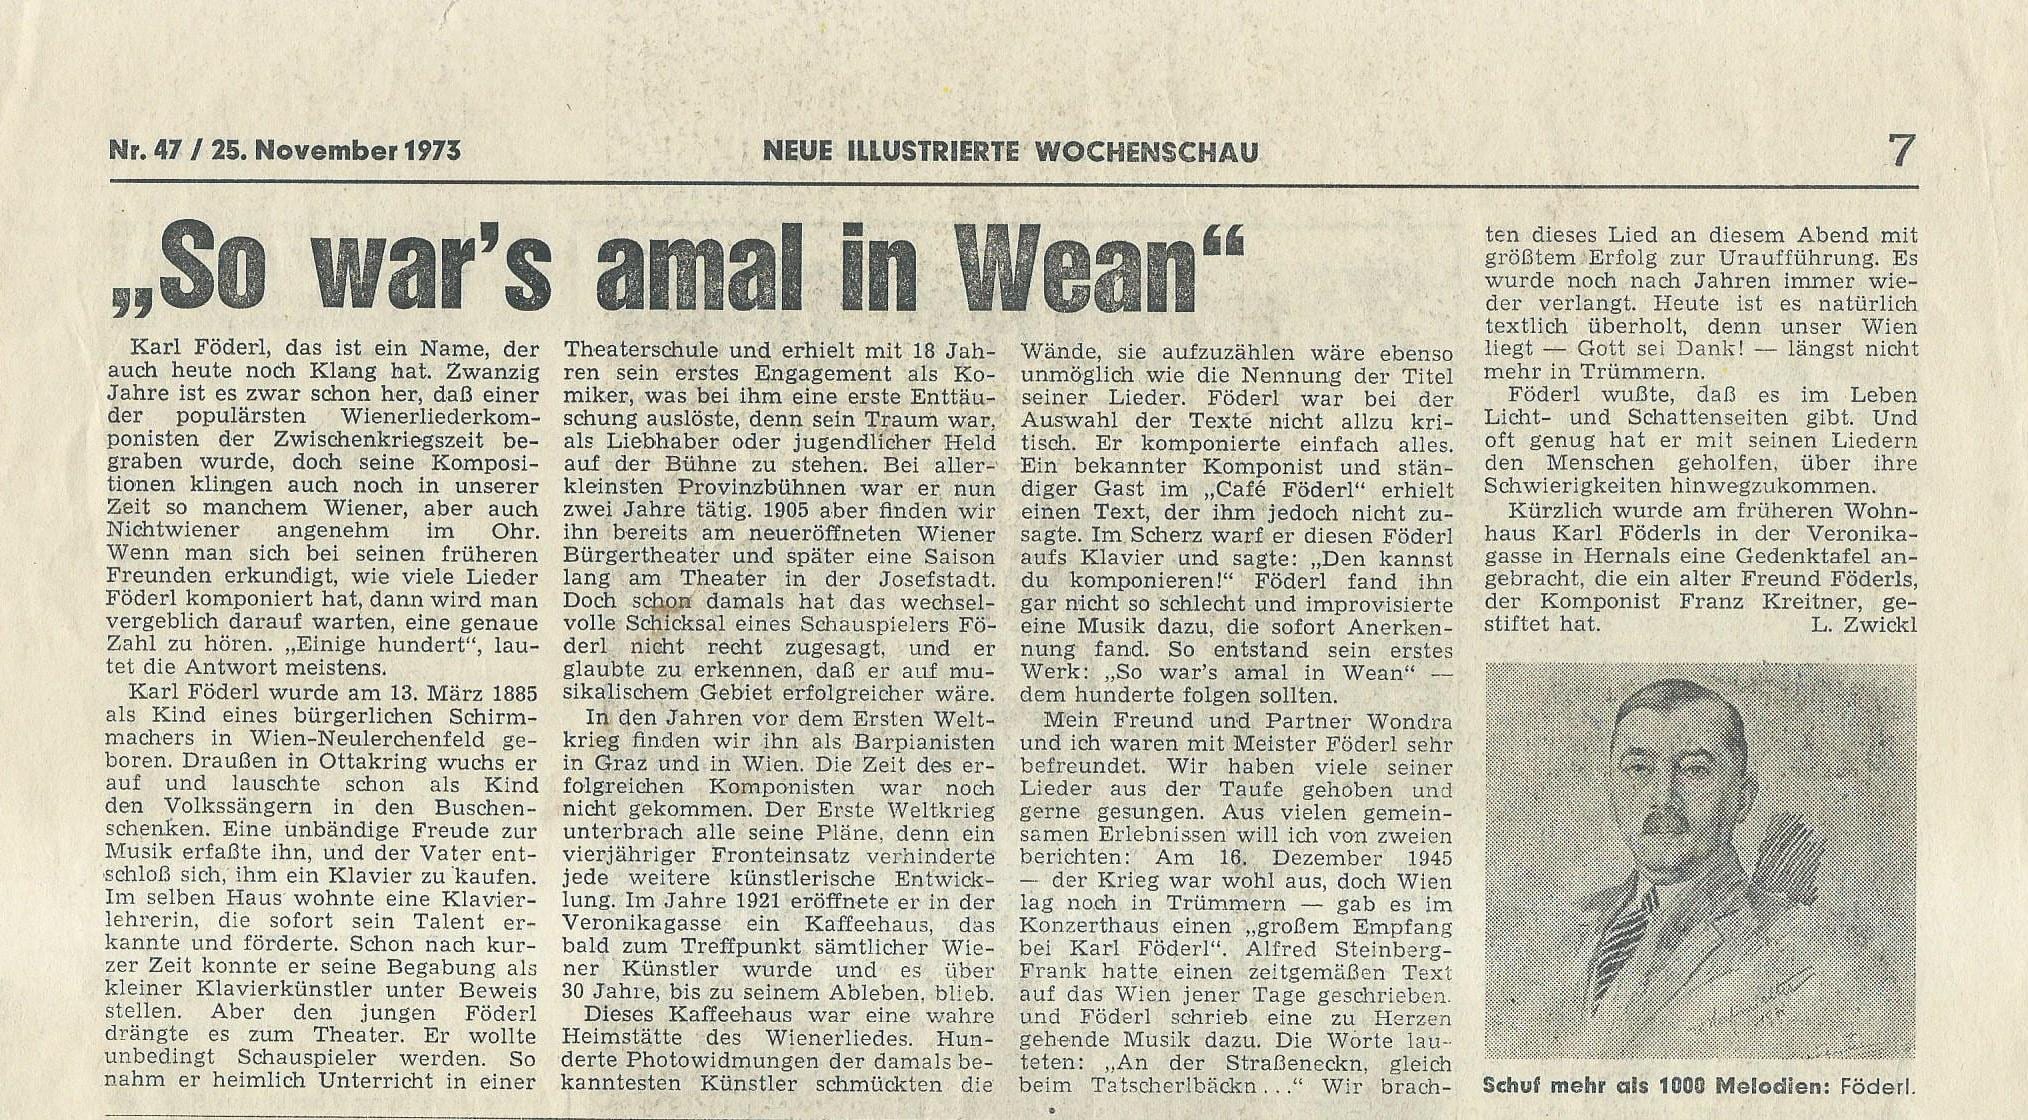 Wochenschau 25.11.1973